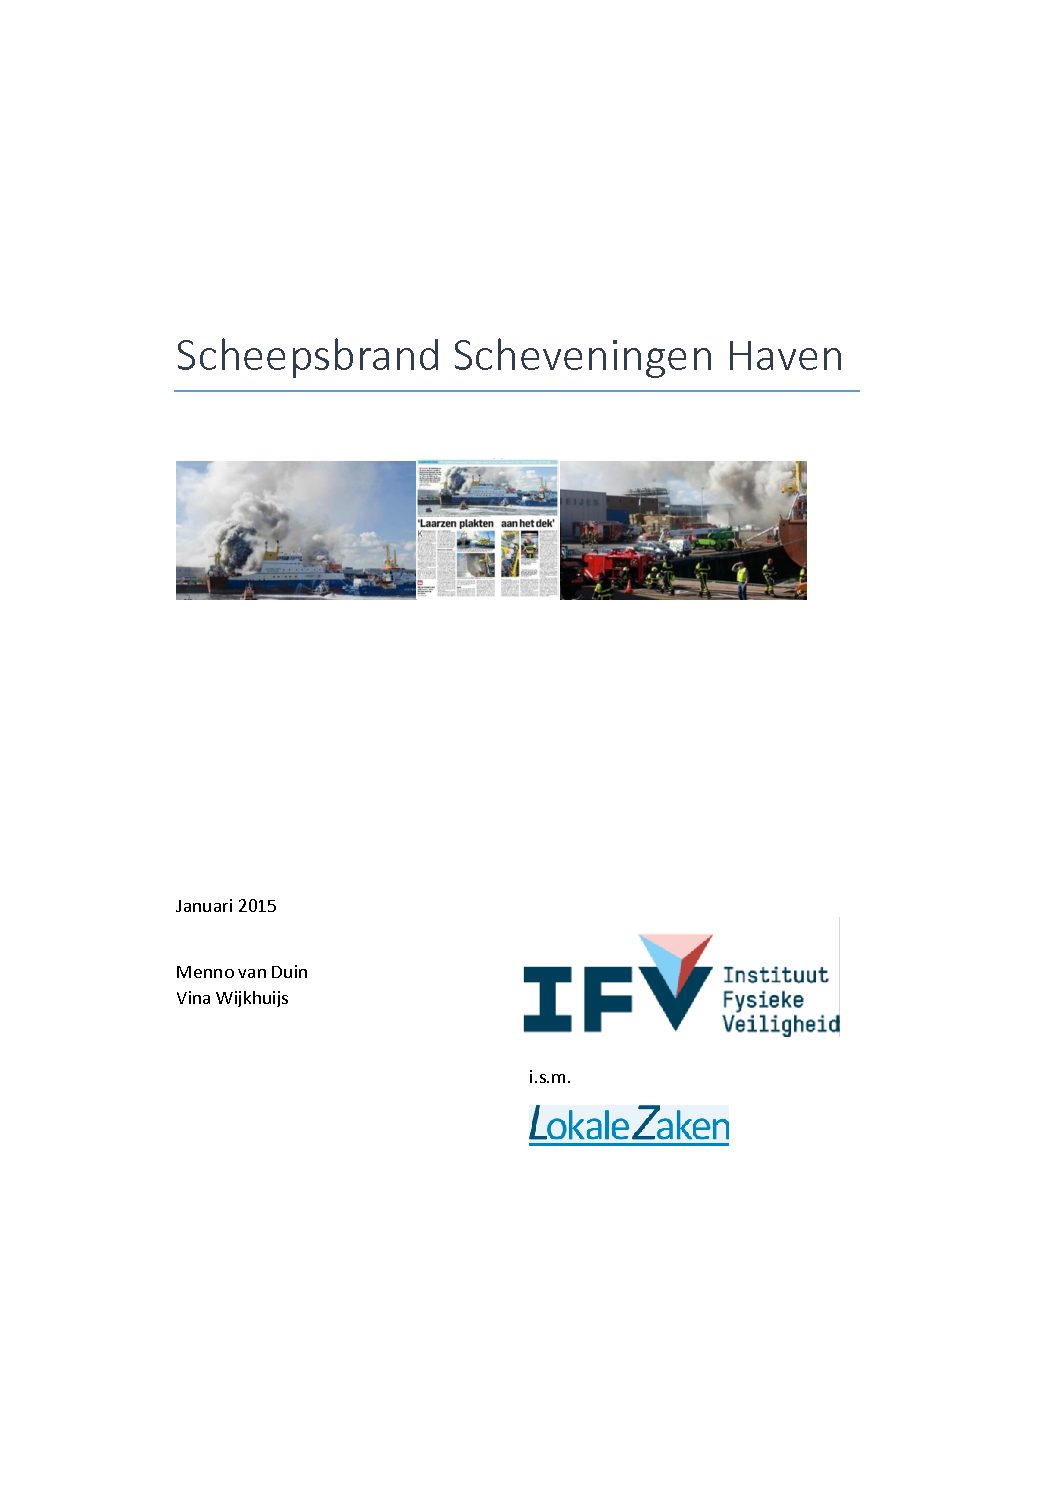 Scheepsbrand Scheveningen Haven, IFV/LokaleZaken, Arnhem/Rotterdam, 2015.